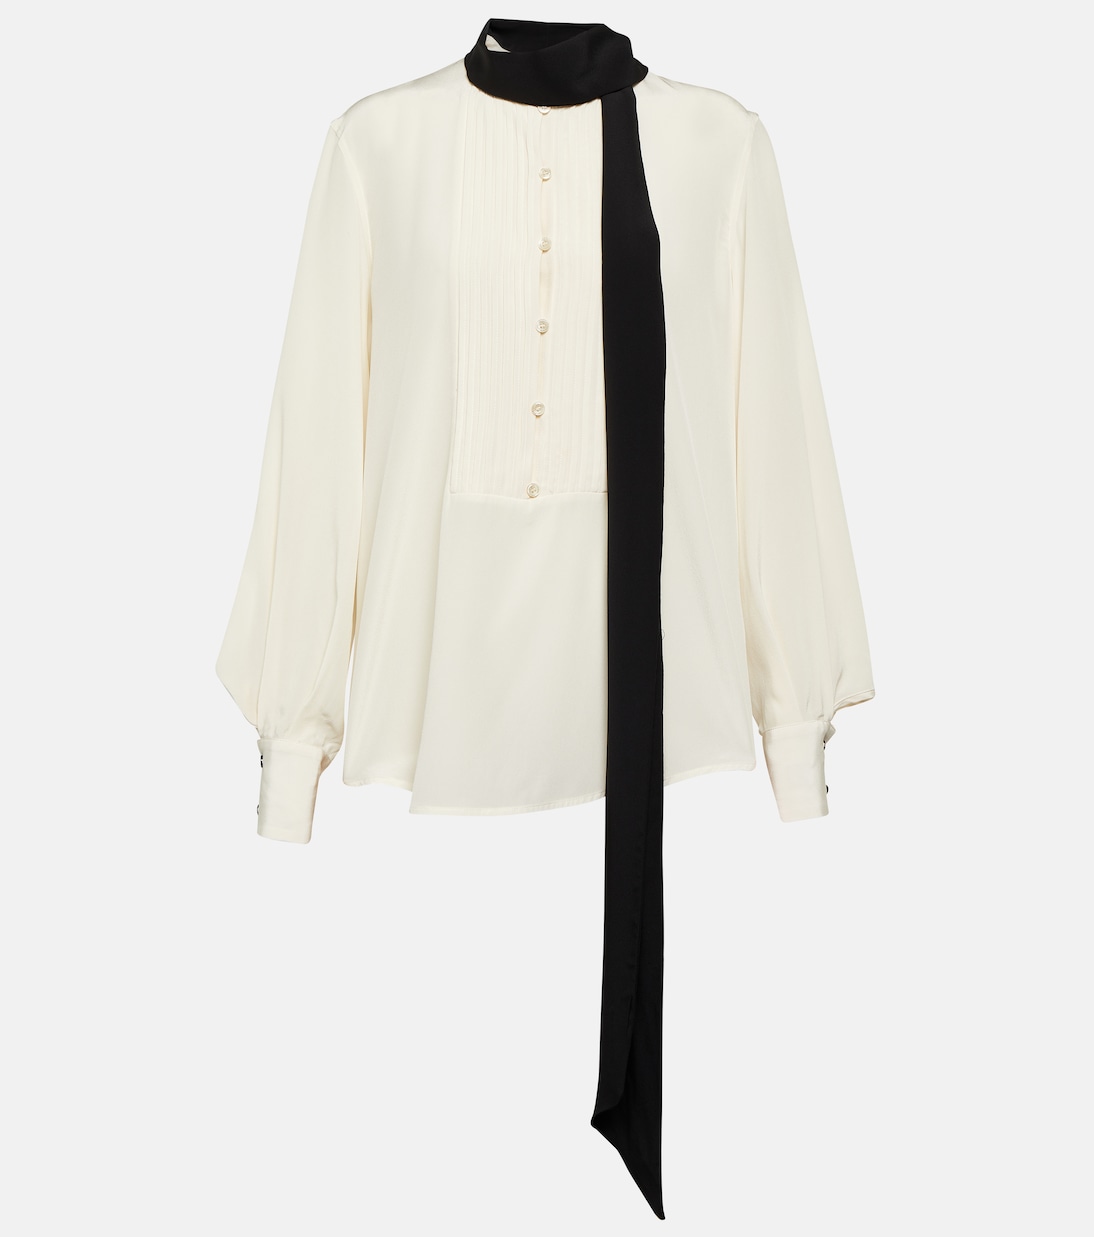 Шелковая блузка с завязками на воротнике Victoria Beckham, белый